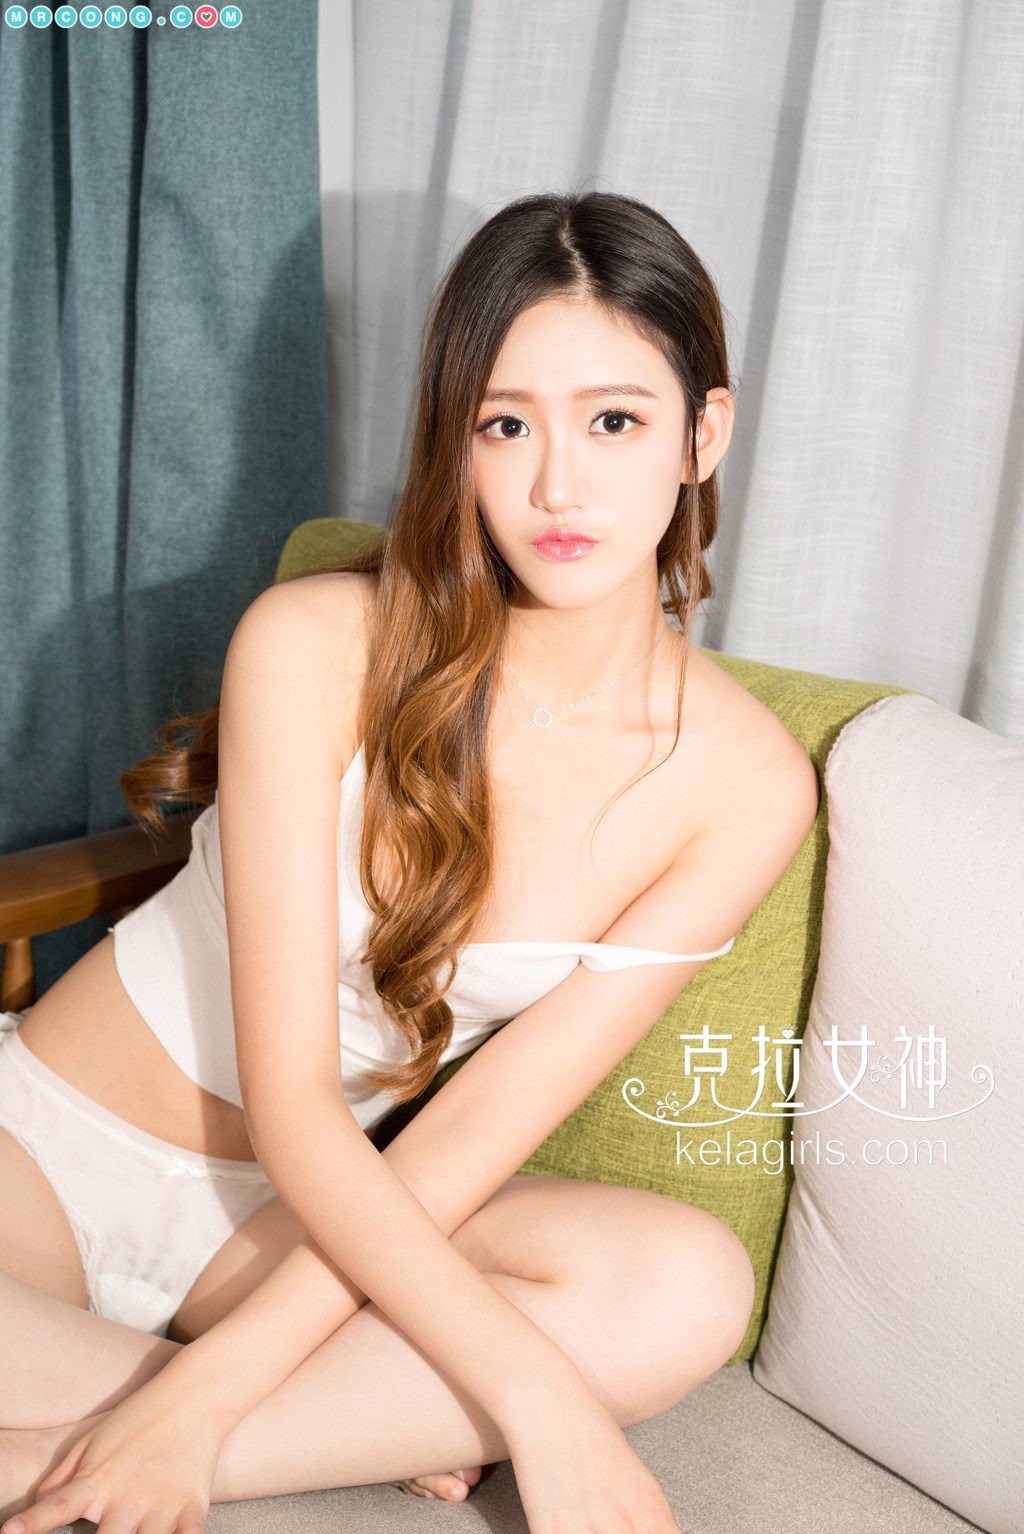 KelaGirls 2017-11-25: Model Jing Yi (景 亦) (26 pictures)